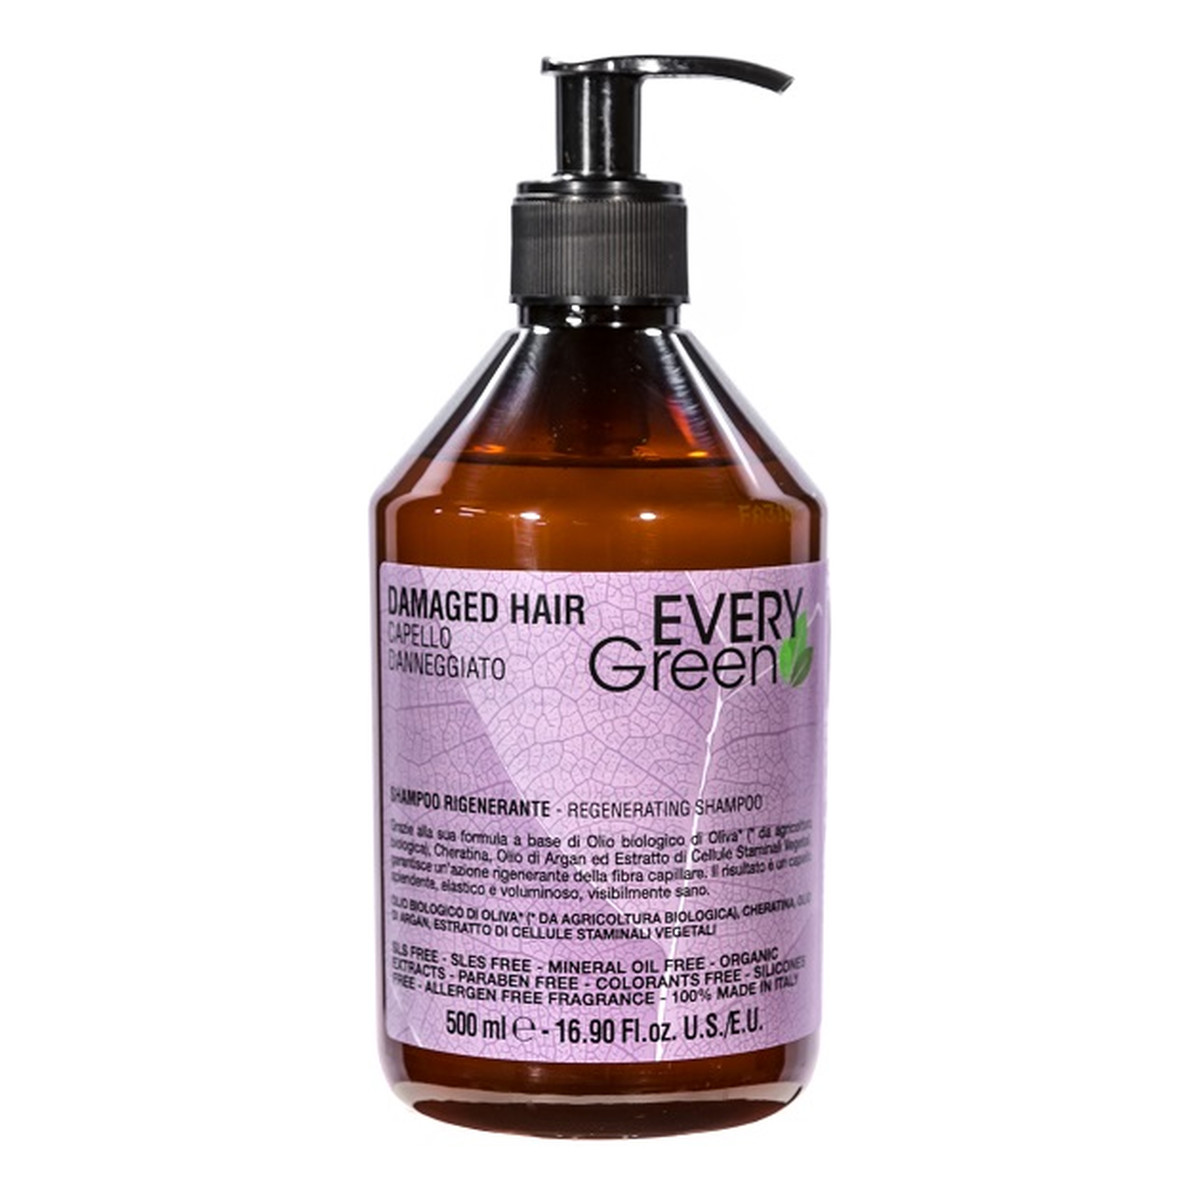 Every Green Damaged Hair Shampoo szampon regenerujący do włosów zniszczonych 500ml